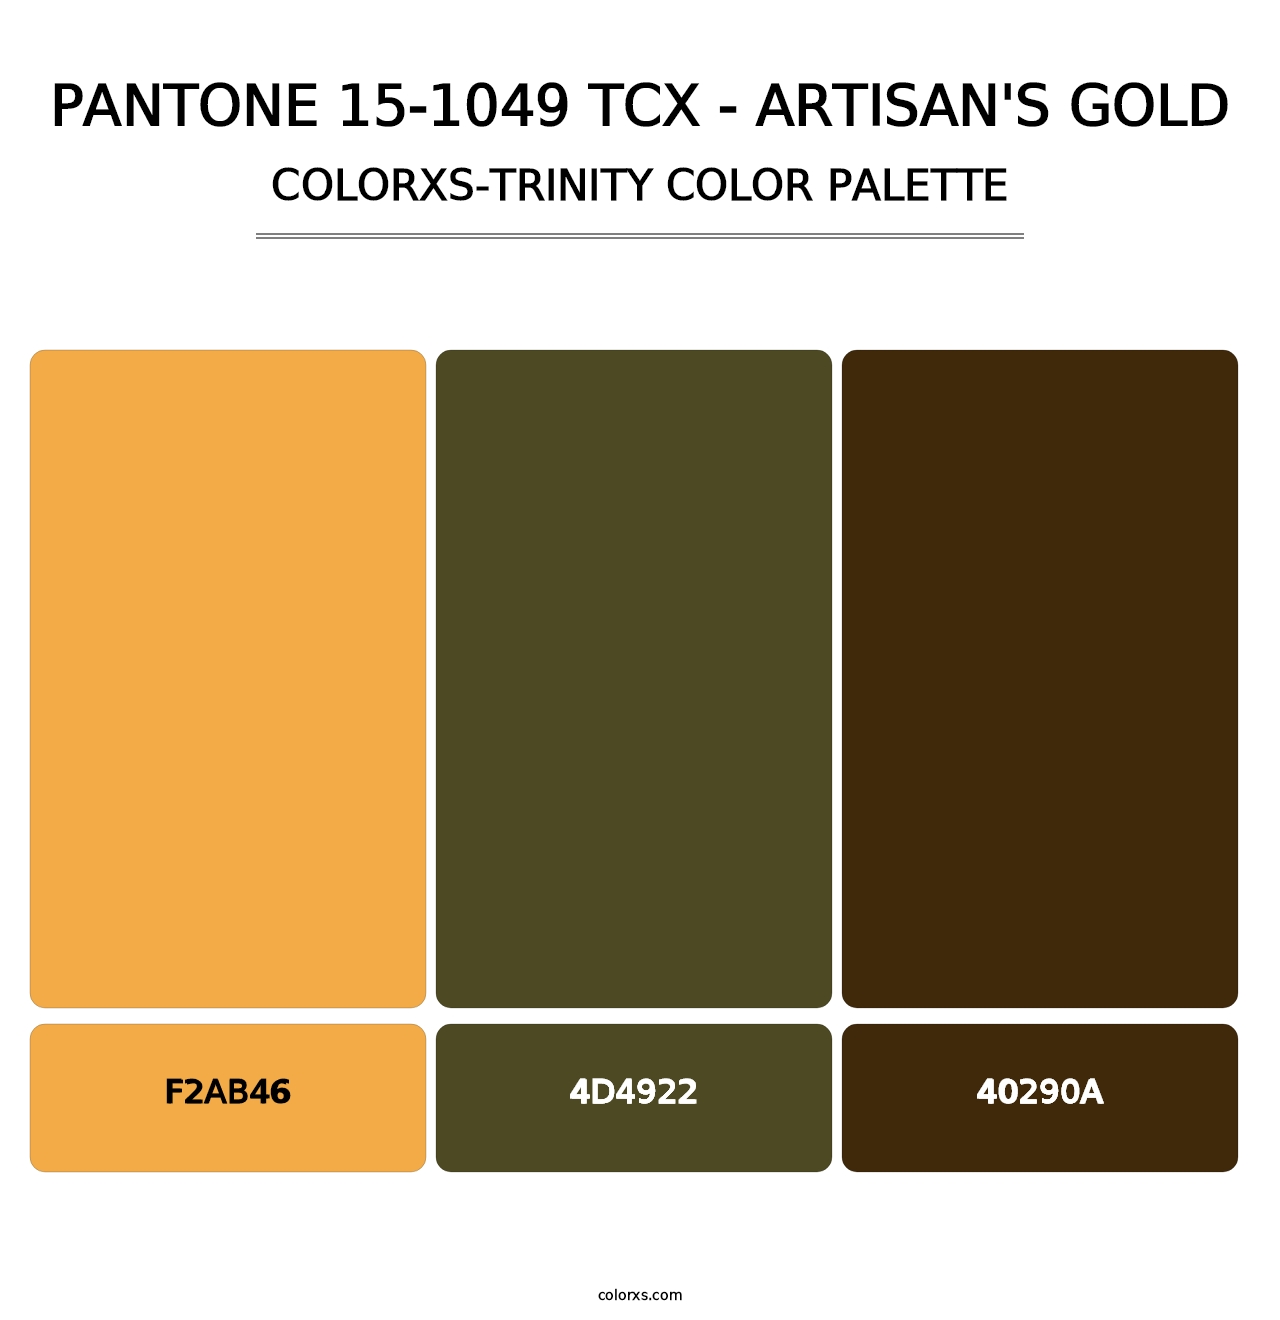 PANTONE 15-1049 TCX - Artisan's Gold - Colorxs Trinity Palette